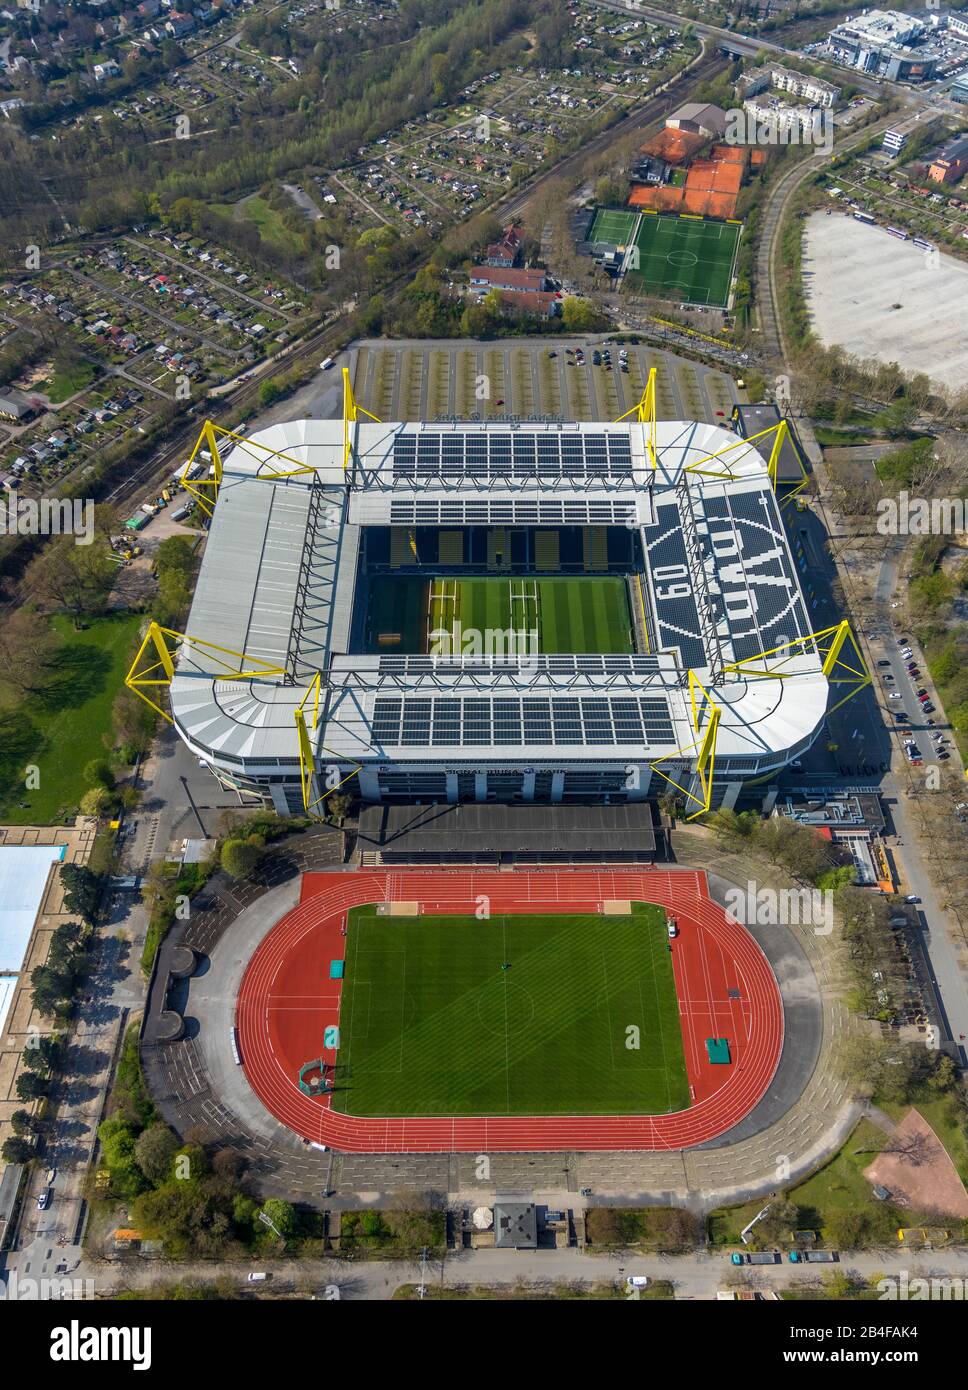 Luftbild des Fußballstadions BVB Signal Iduna Park und Stadion Rote Erde in  Dortmund im Ruhrgebiet im Bundesland Nordrhein-Westfalen, Deutschland  Stockfotografie - Alamy